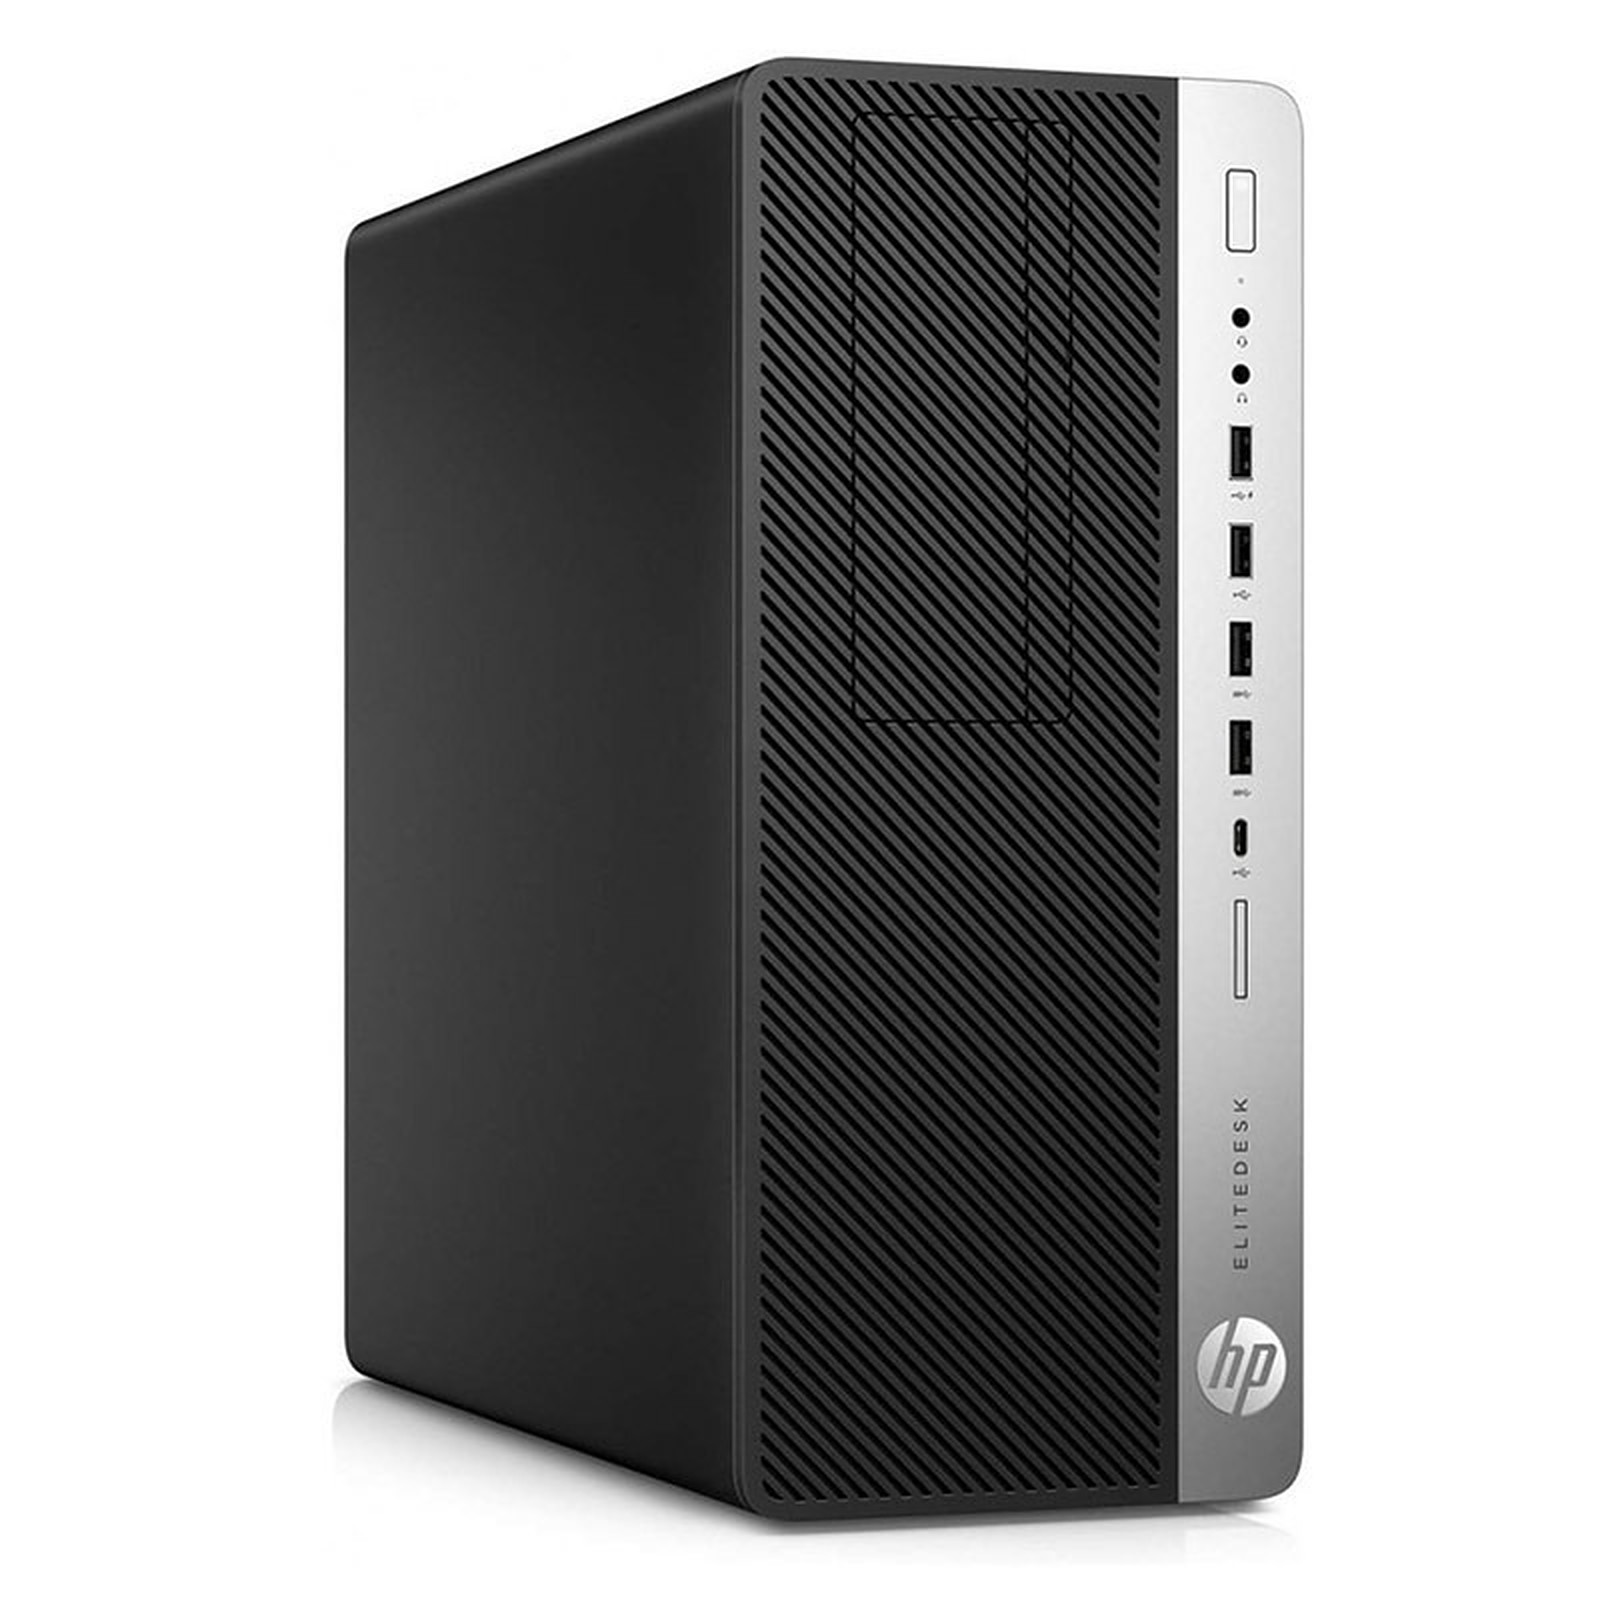 HP LPG-800G3 (I5658224S) · Reconditionne - PC de bureau reconditionne HP